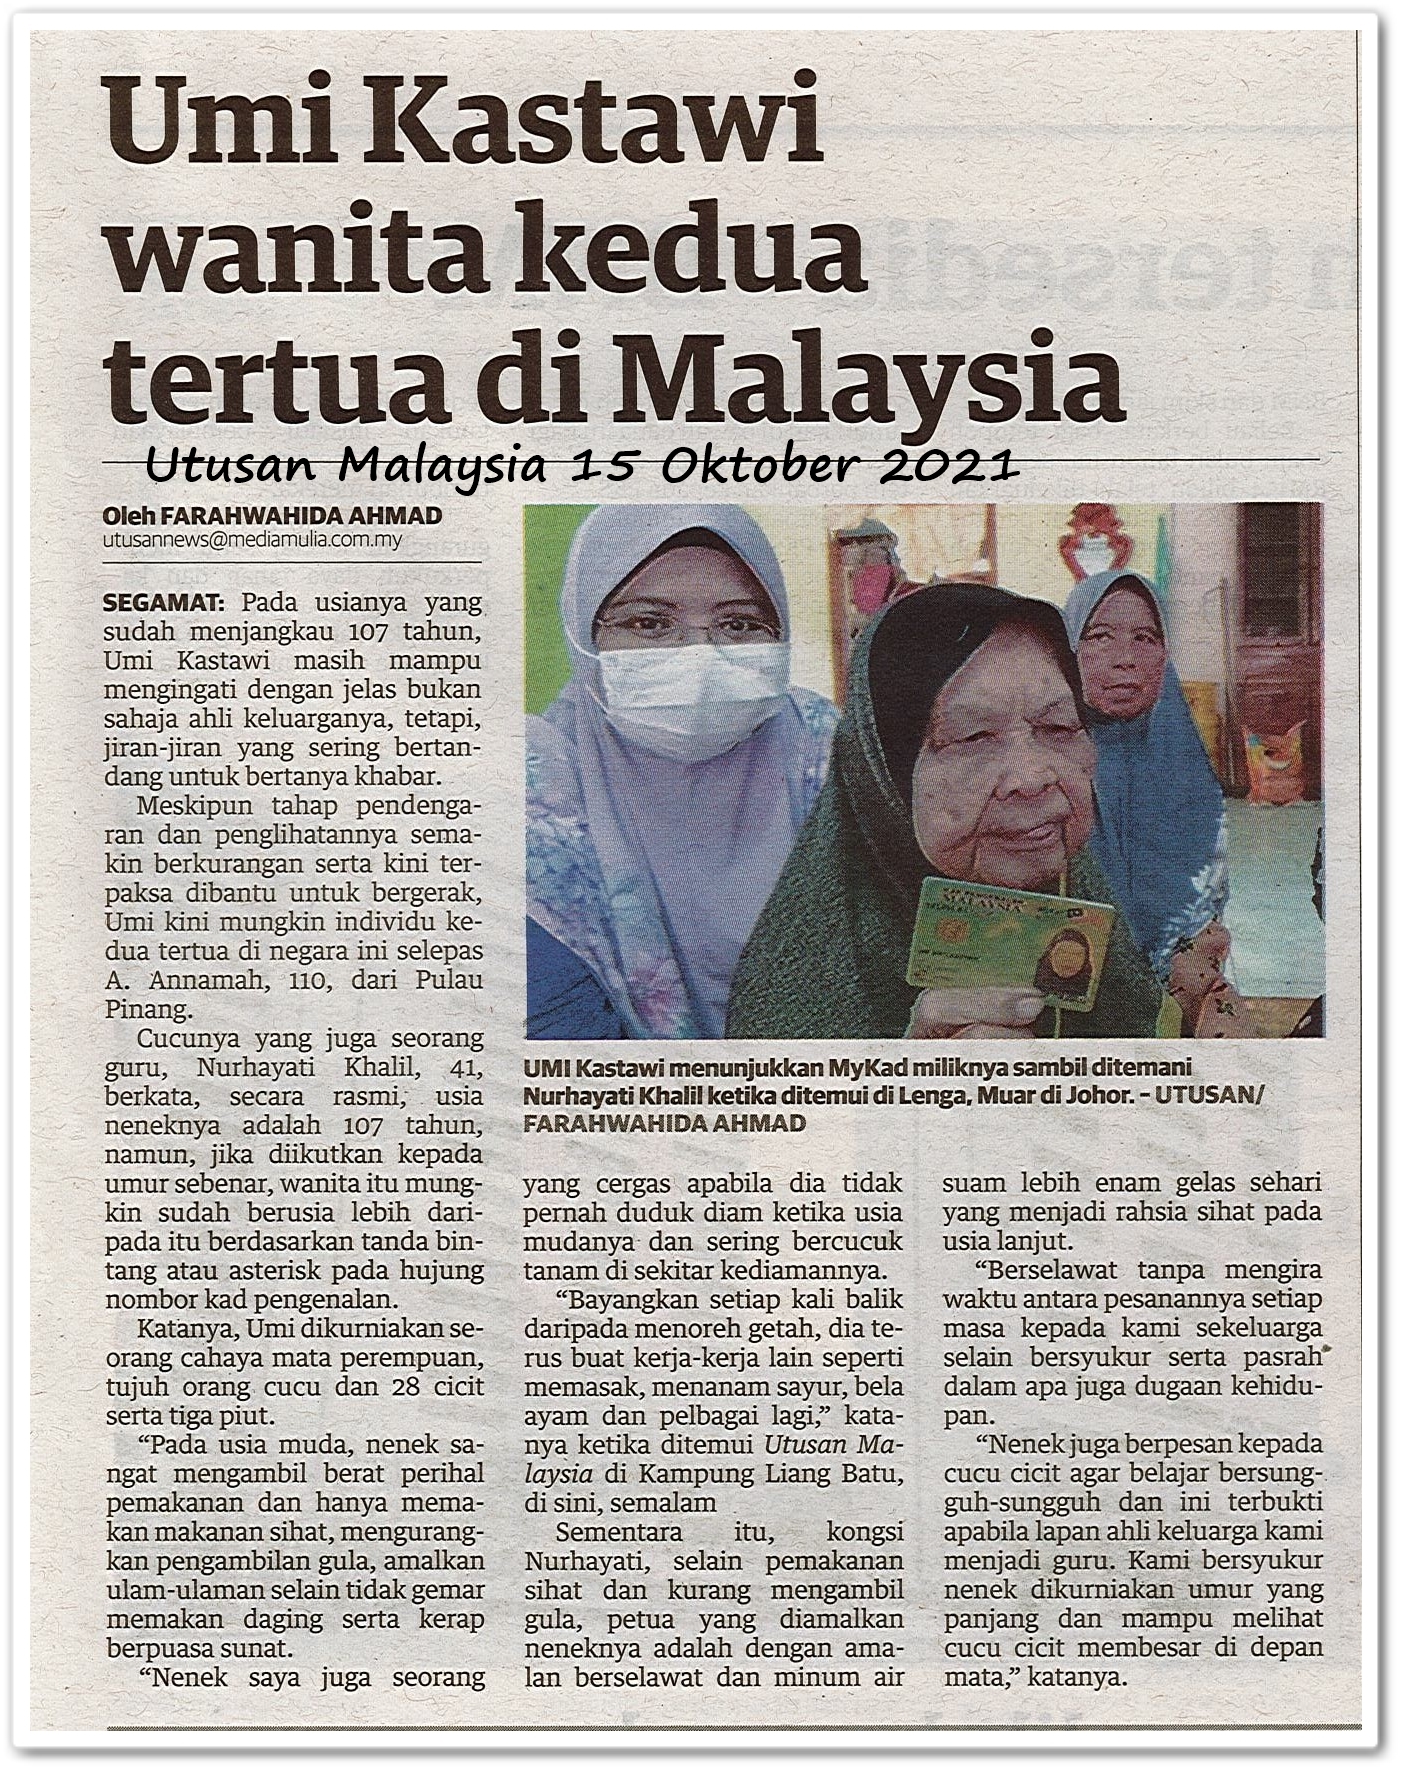 Umi Kastawi wanita kedua tertua di Malaysia - Keratan akhbar Utusan Malaysia 15 Oktober 2021